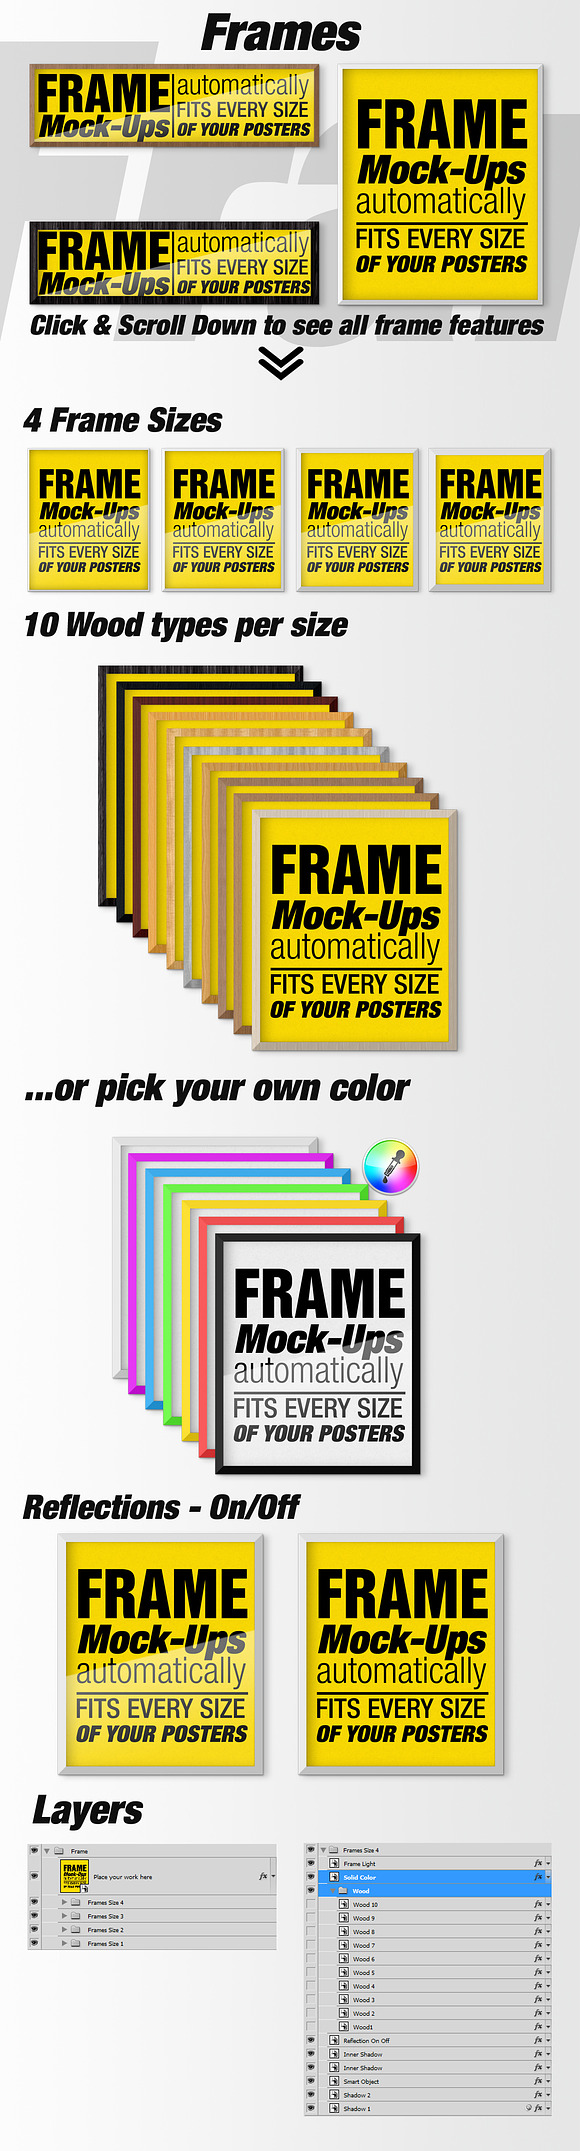 Canvas Mockups - Frames Mockups v 1 in Print Mockups - product preview 1